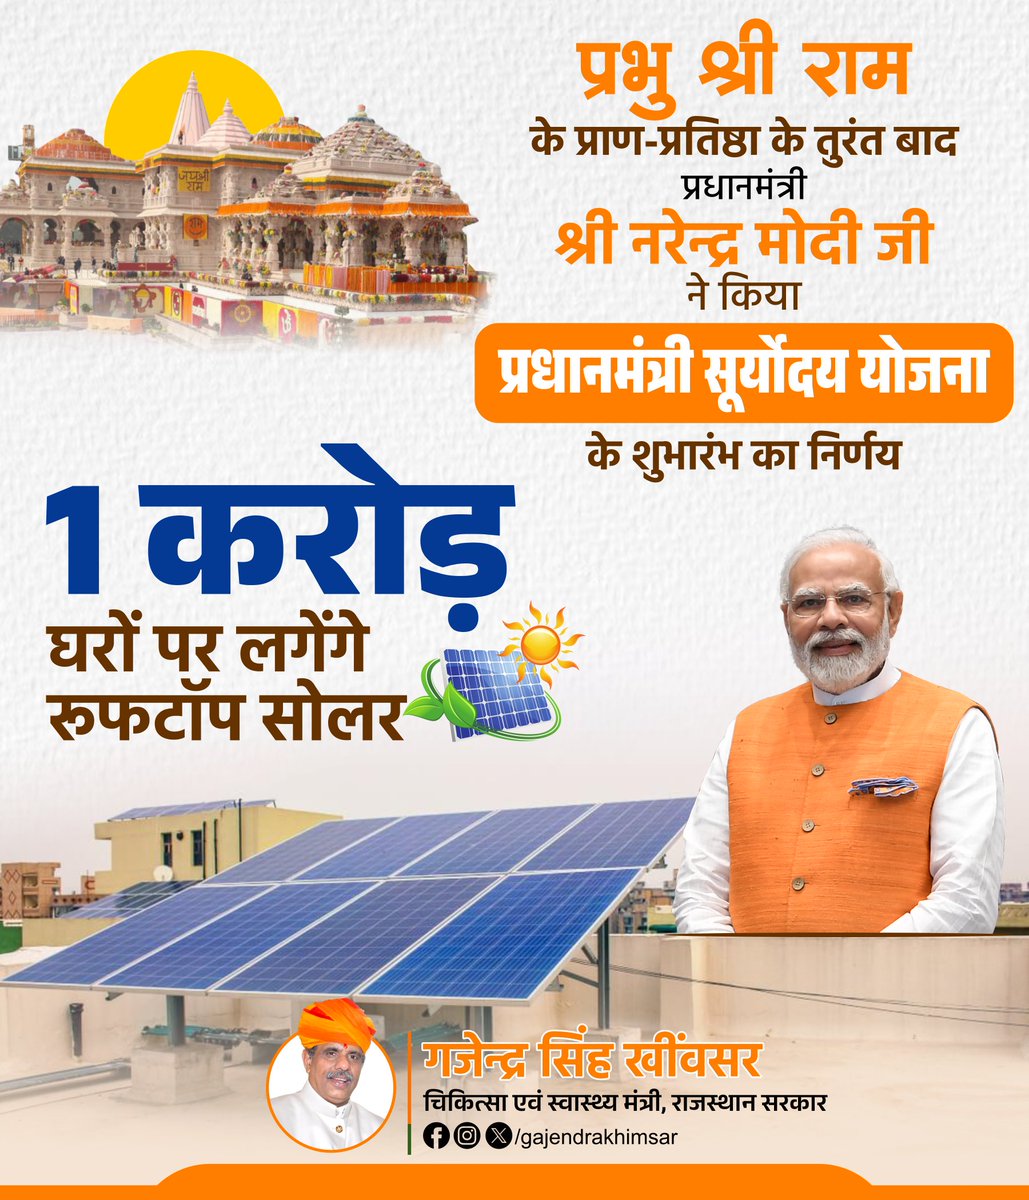 राम ऊर्जा, सौर ऊर्जा..

अब हर घर सोलर से हर आंगन होगा रोशन!

श्री रामलला की ऐतिहासिक प्राण प्रतिष्ठा के बाद मोदी सरकार ने 'प्रधानमंत्री सूर्योदय योजना' की शुरुआत की।

इस योजना के तहत सरकार 1 करोड़ घरों पर रूफटॉप सोलर लगाएगी।

#PMSuryodayYojana #solarpower #RooftopSolar #modigovt